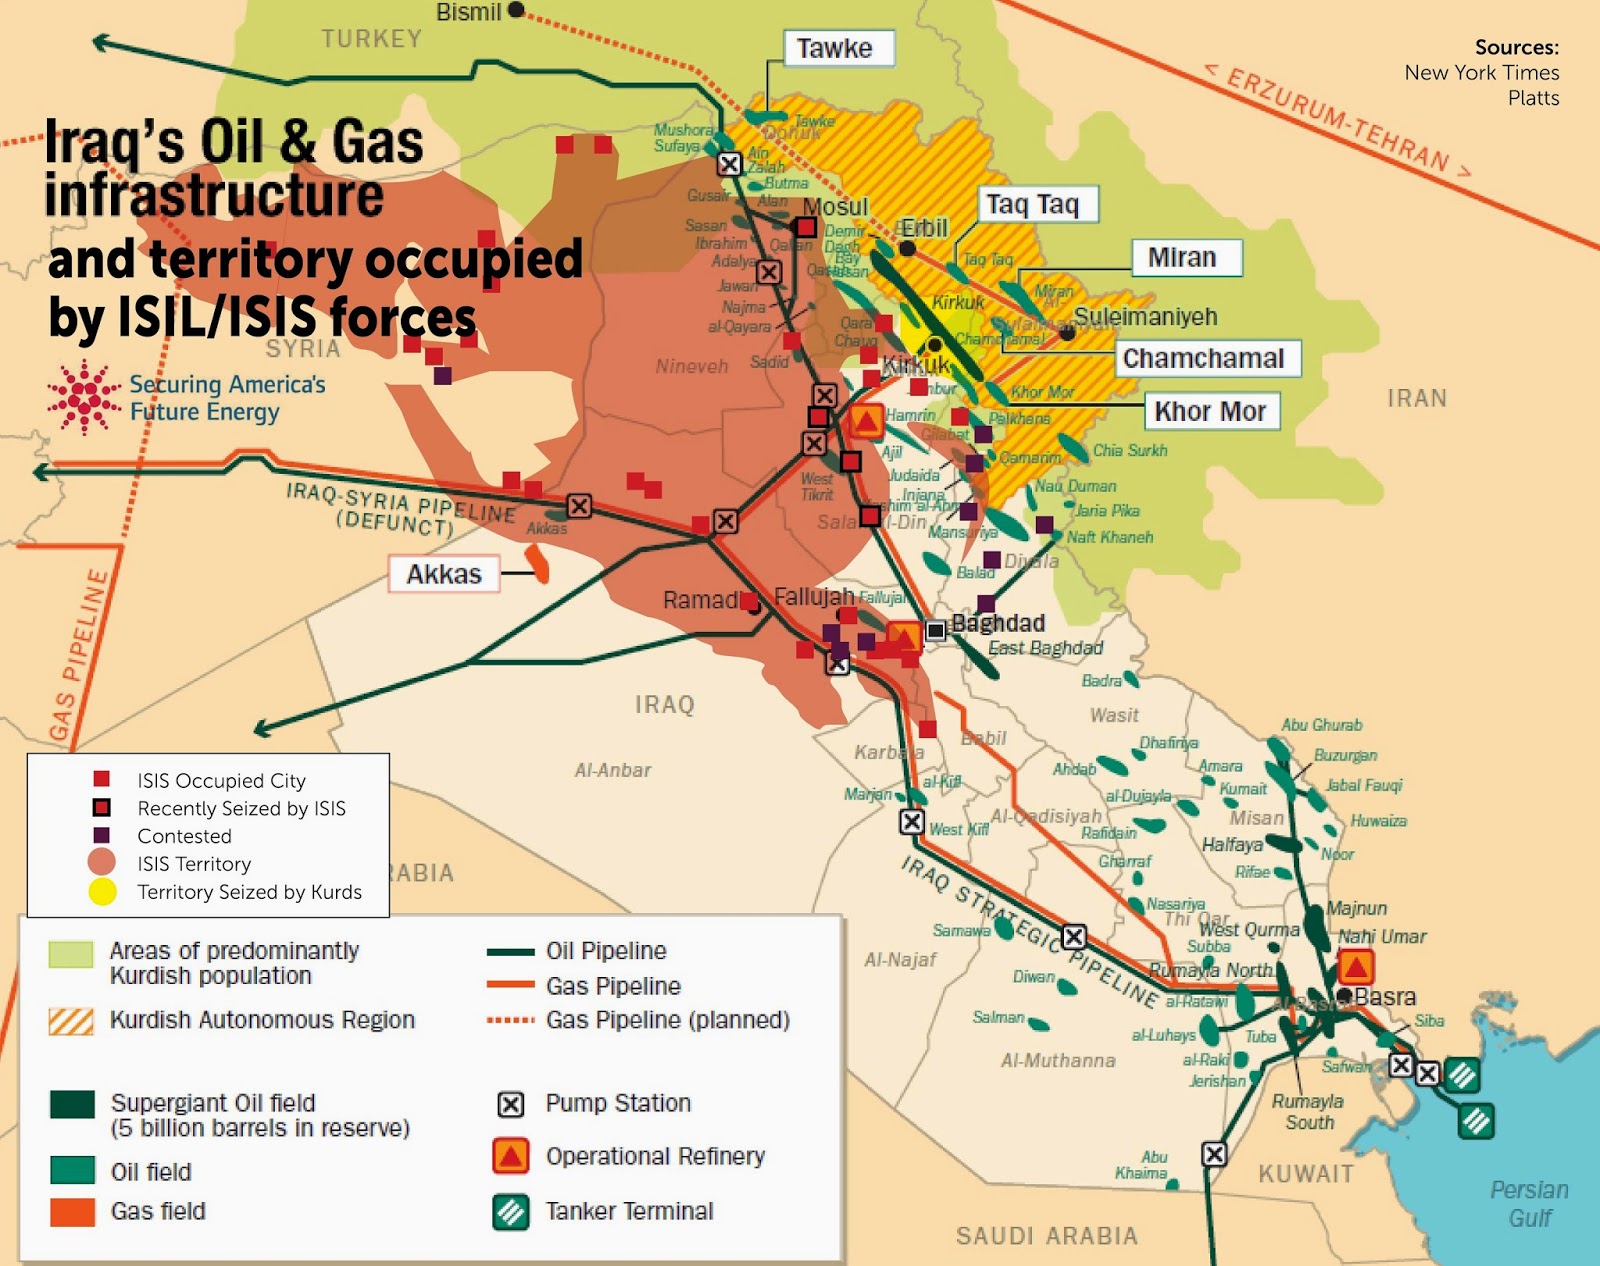 Il Petrolio dello Stato islamico. a chi viene venduto?